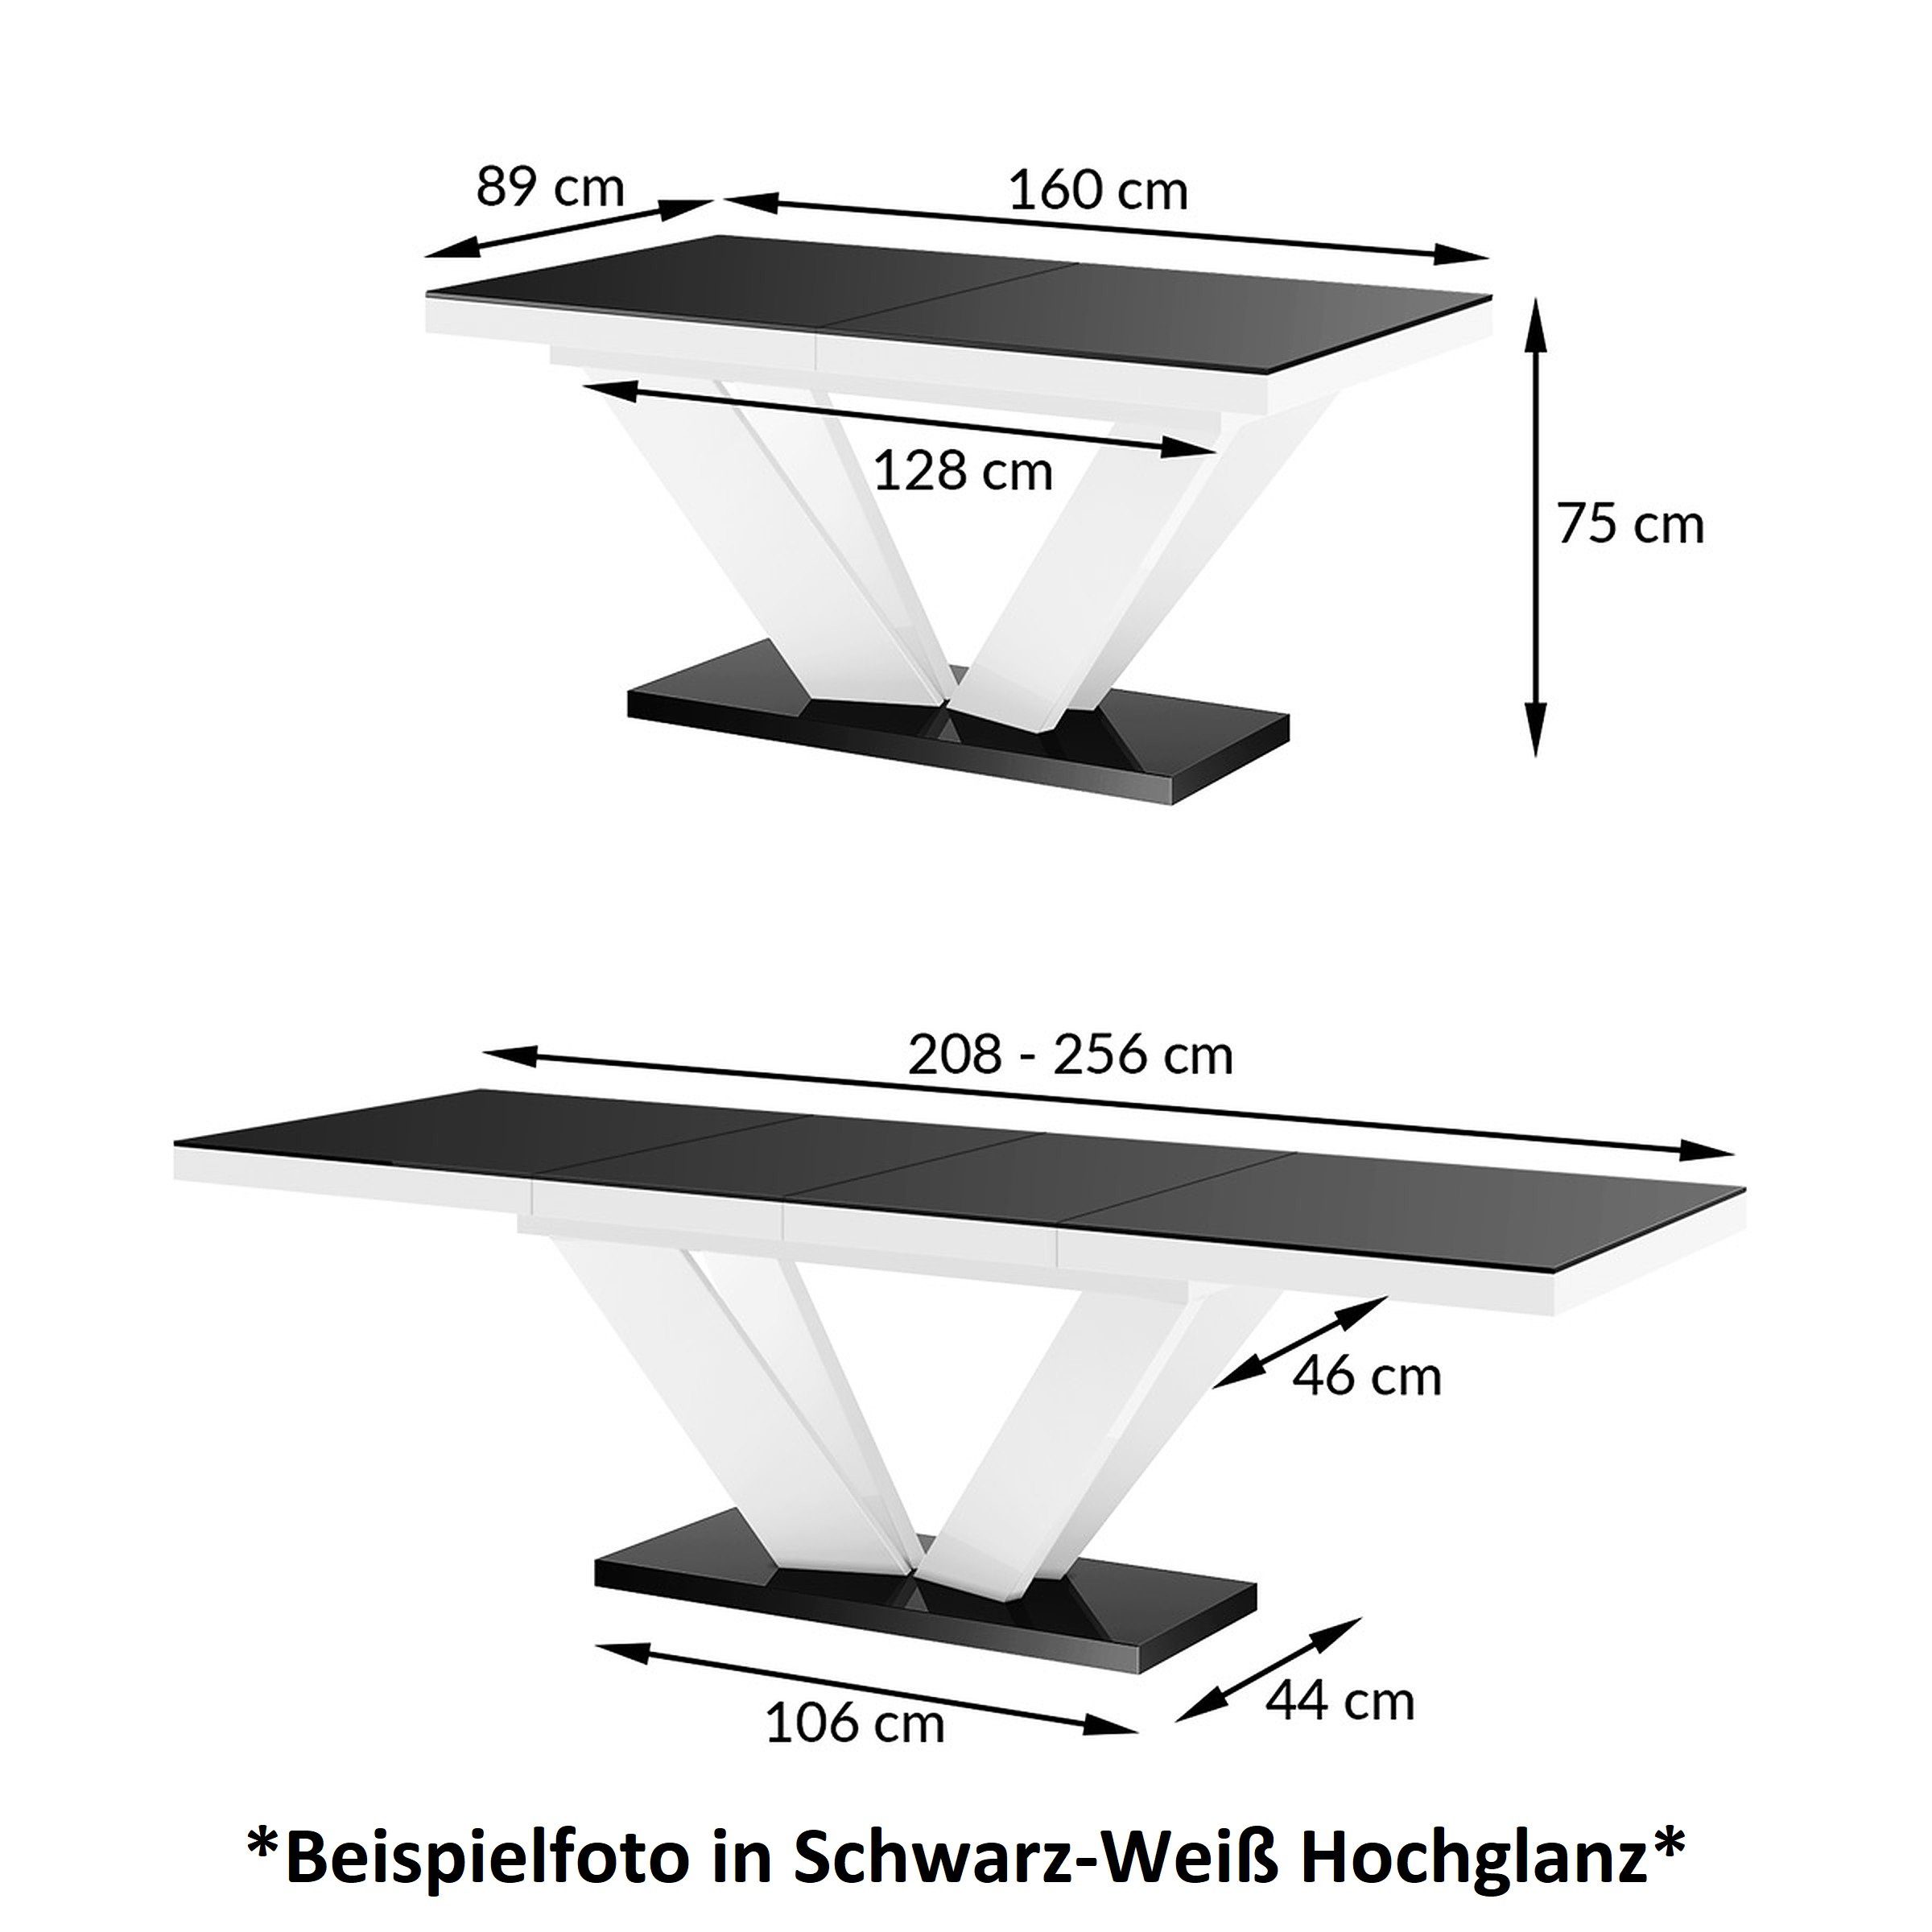 Schwarz ausziehbar Esstisch Design Hochglanz Schwarz / designimpex 256cm Weiß Weiß HEU-111 Tisch / Hochglanz bis Hochglanz 160